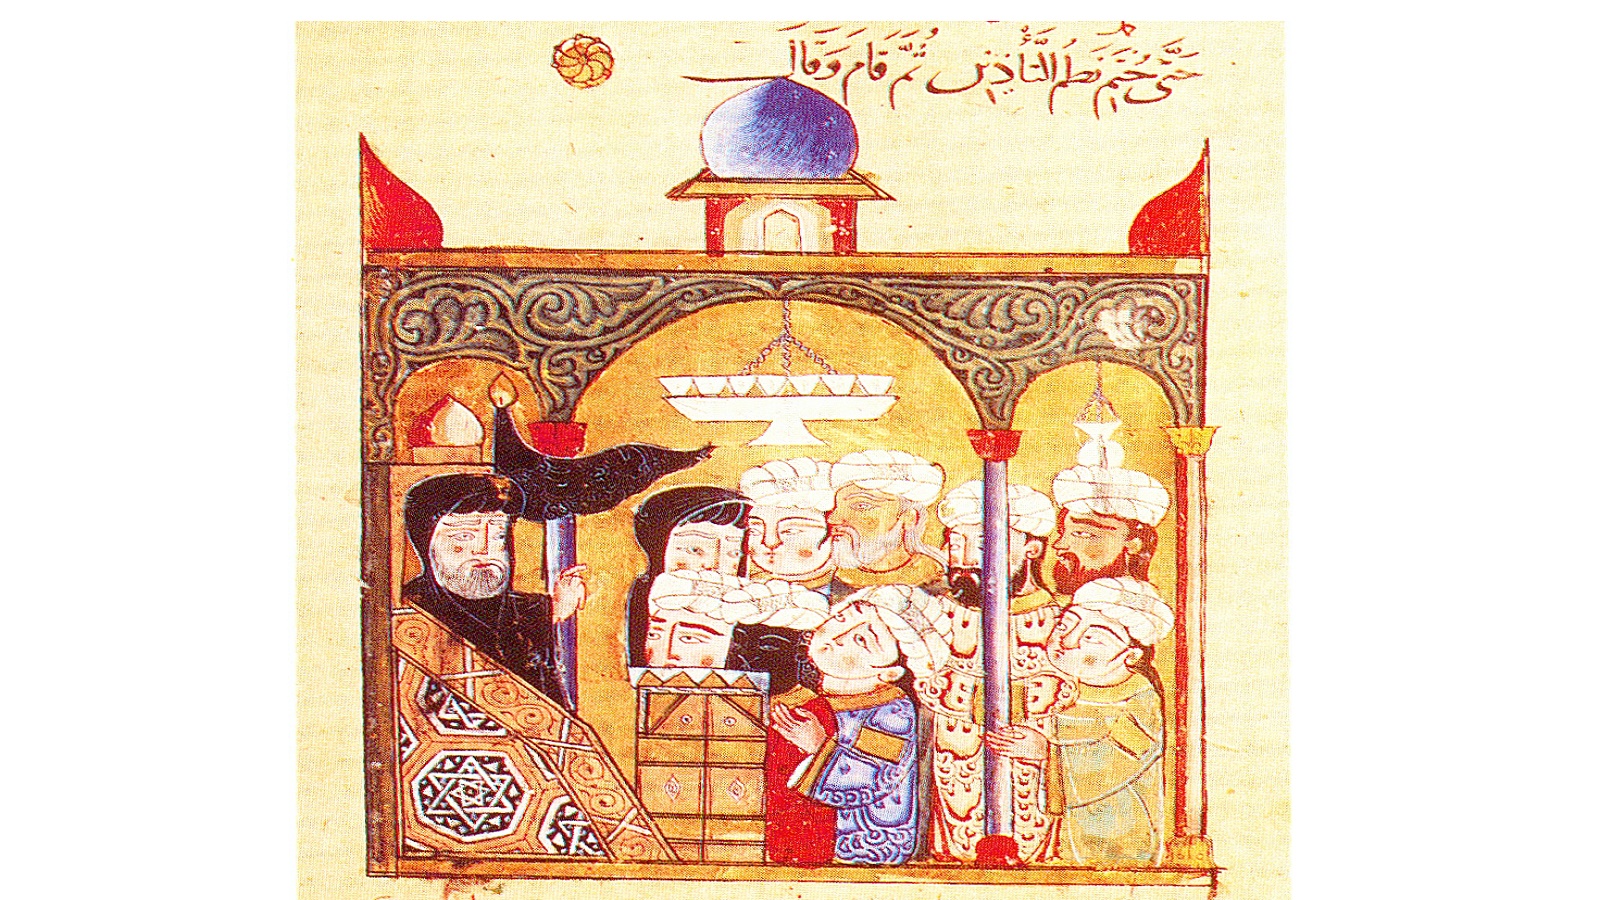 - أبو زيد في مسجد سمرقند، "مقامات الحريري"، 1330، ، المكتبة الوطنية، فيينا.